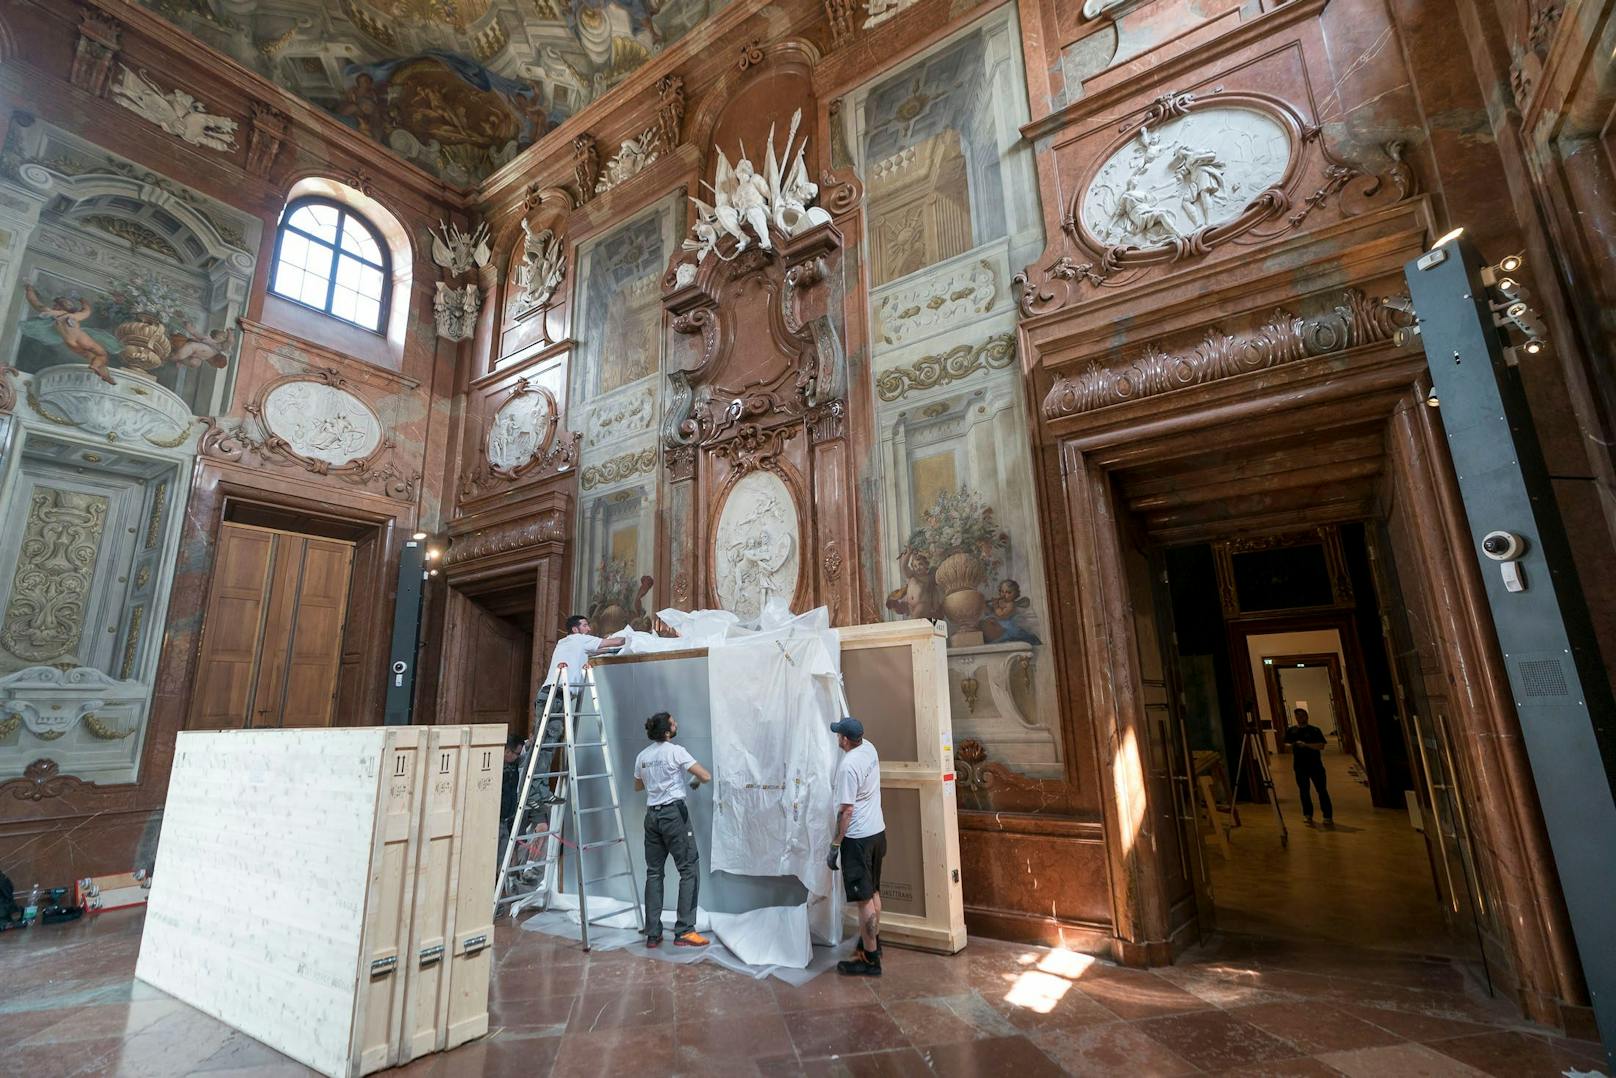 Aufbauarbeiten der Ausstellung "Kolossal" im Unteren Belvedere.